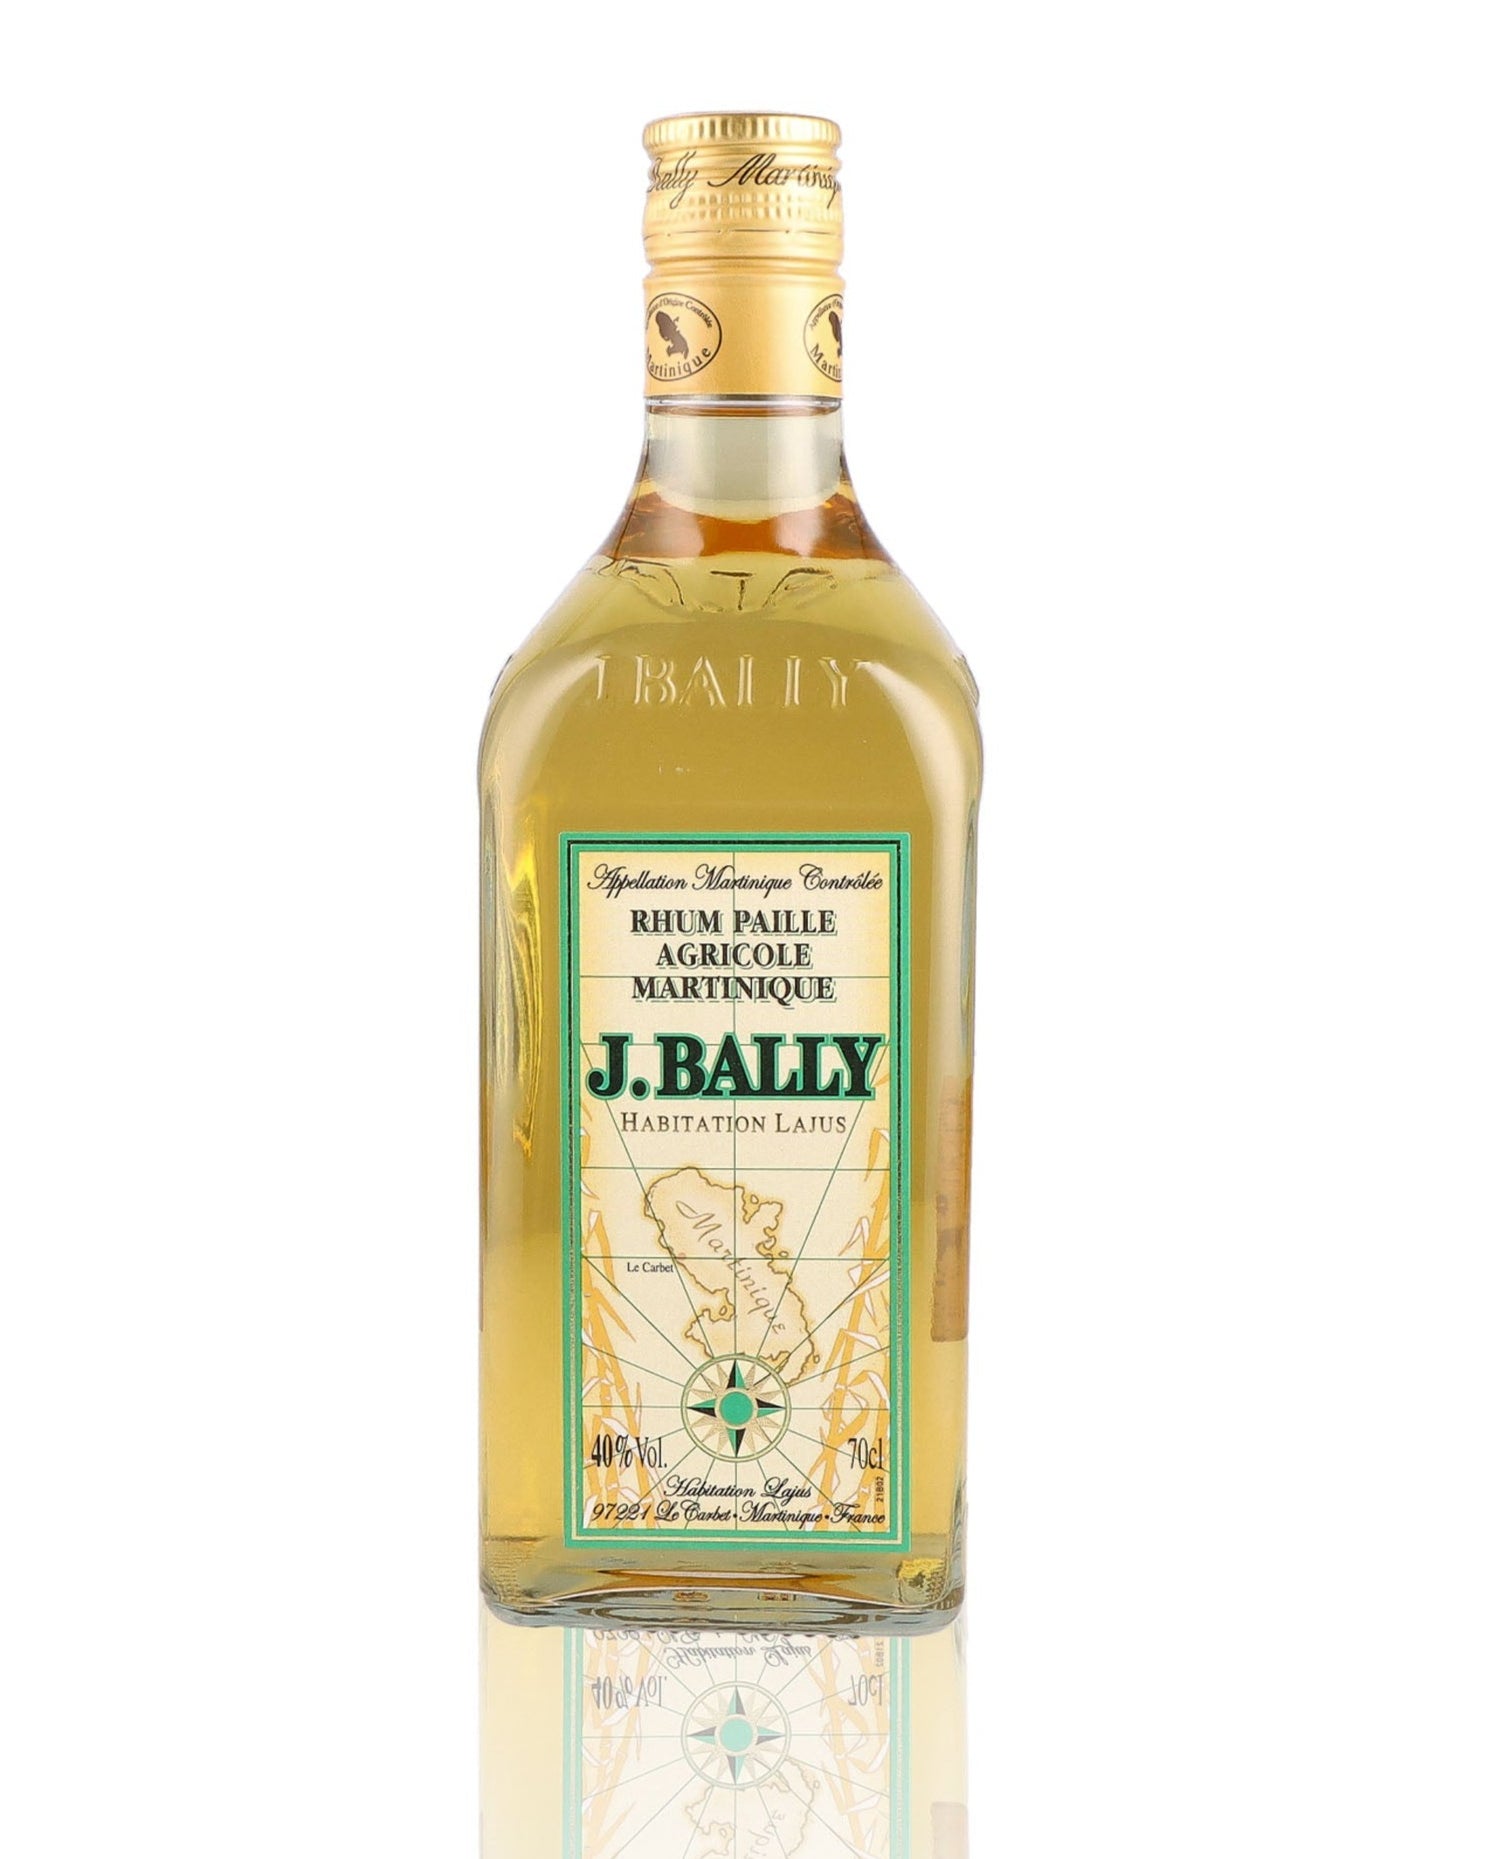 Une bouteille de rhum ambre, de la marque Bally, nommée rhum paille.